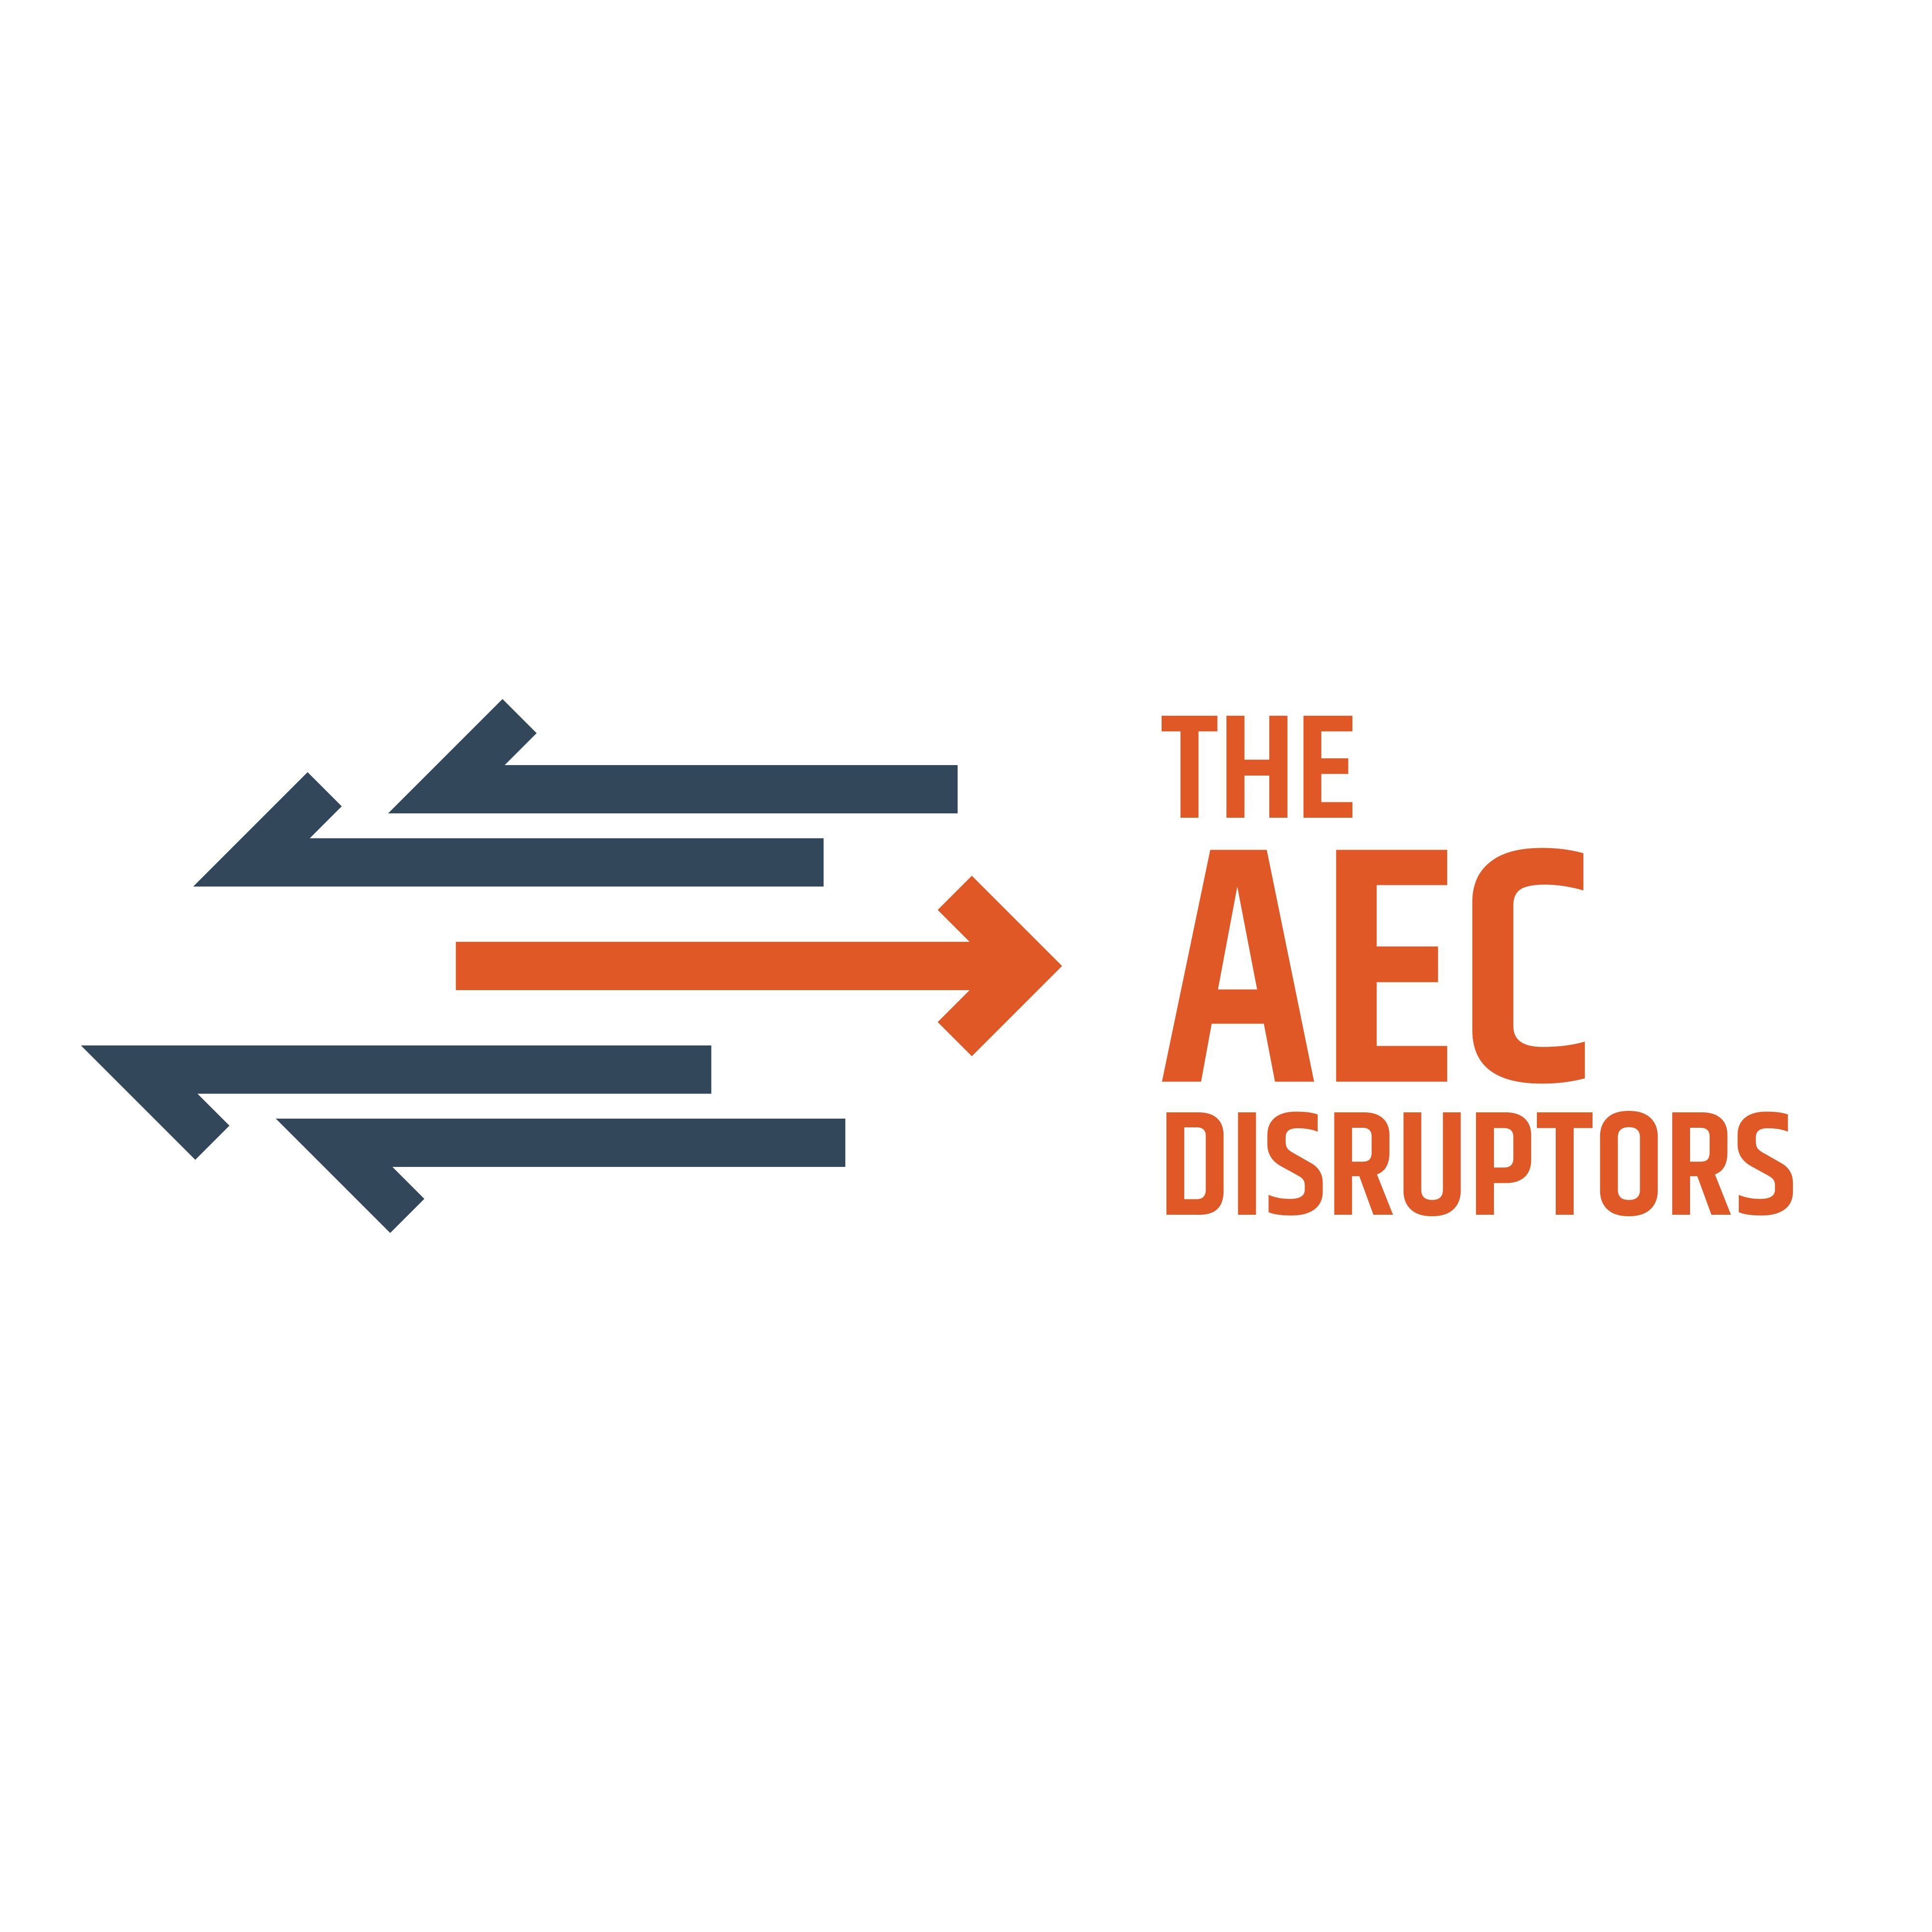 THE AEC DISRUPTORS